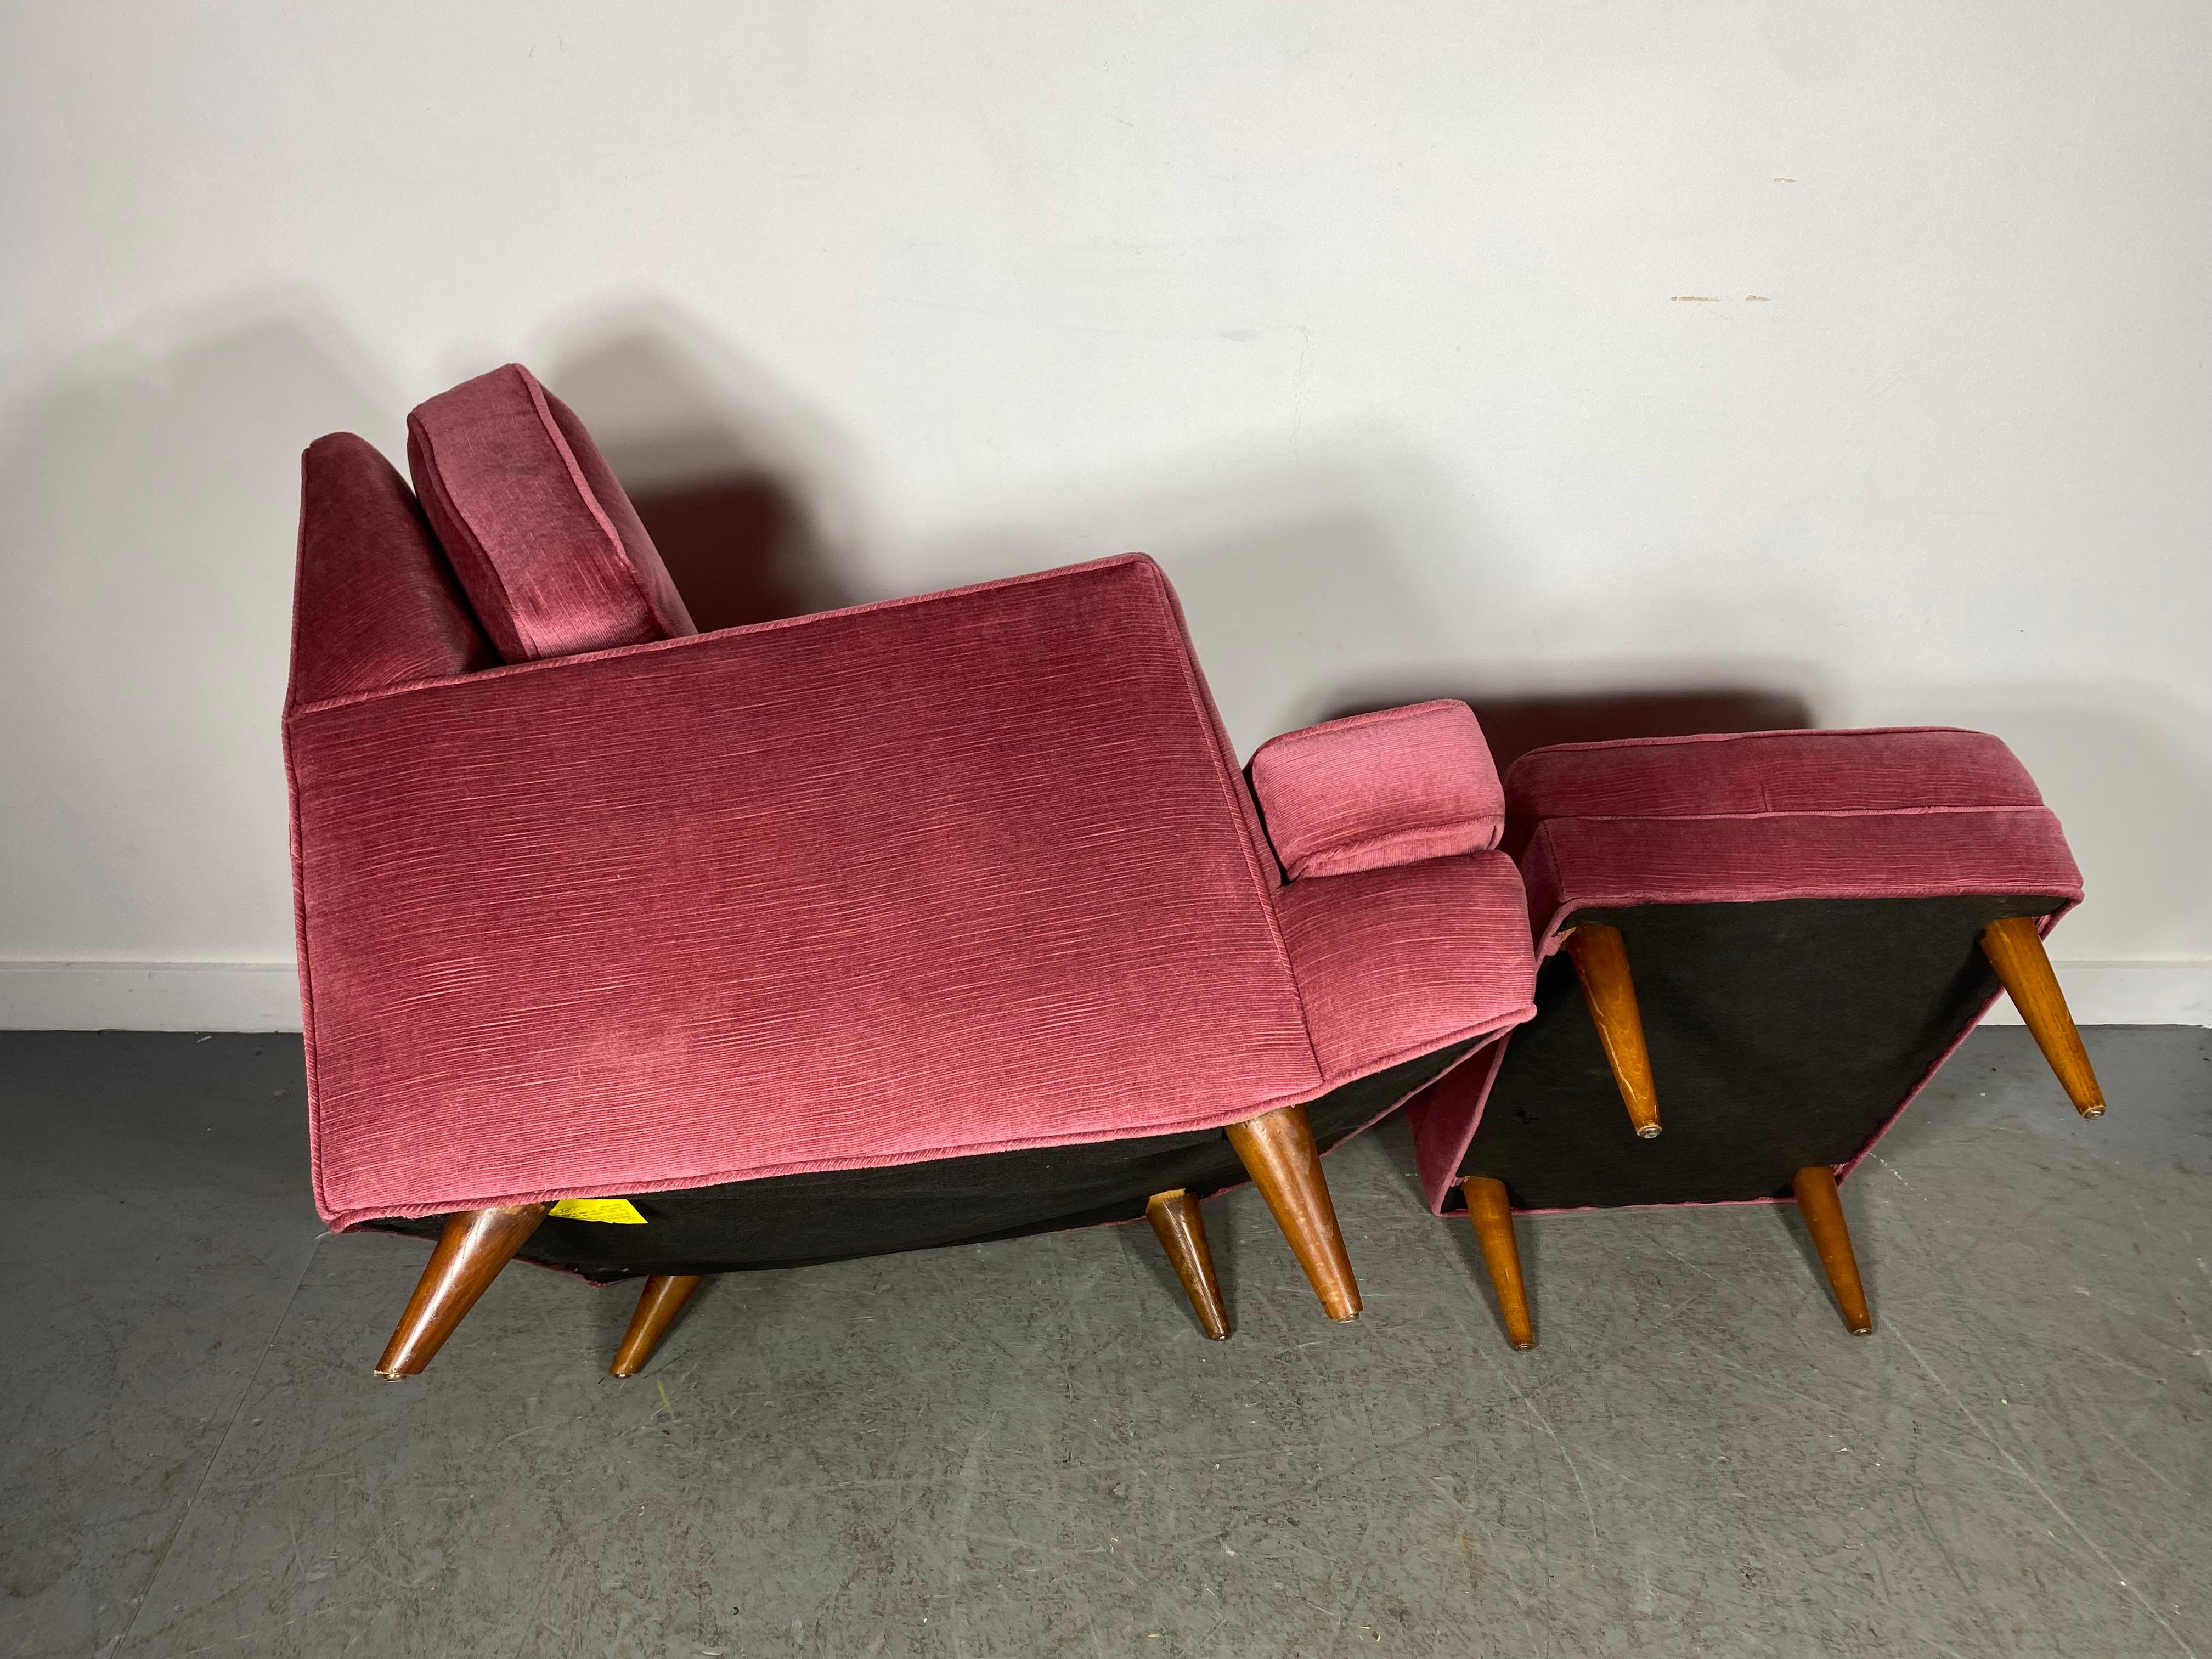 Stunning Modernist Lounge Chair & Ott Oman by Roger Springer for Dunbar For Sale 2